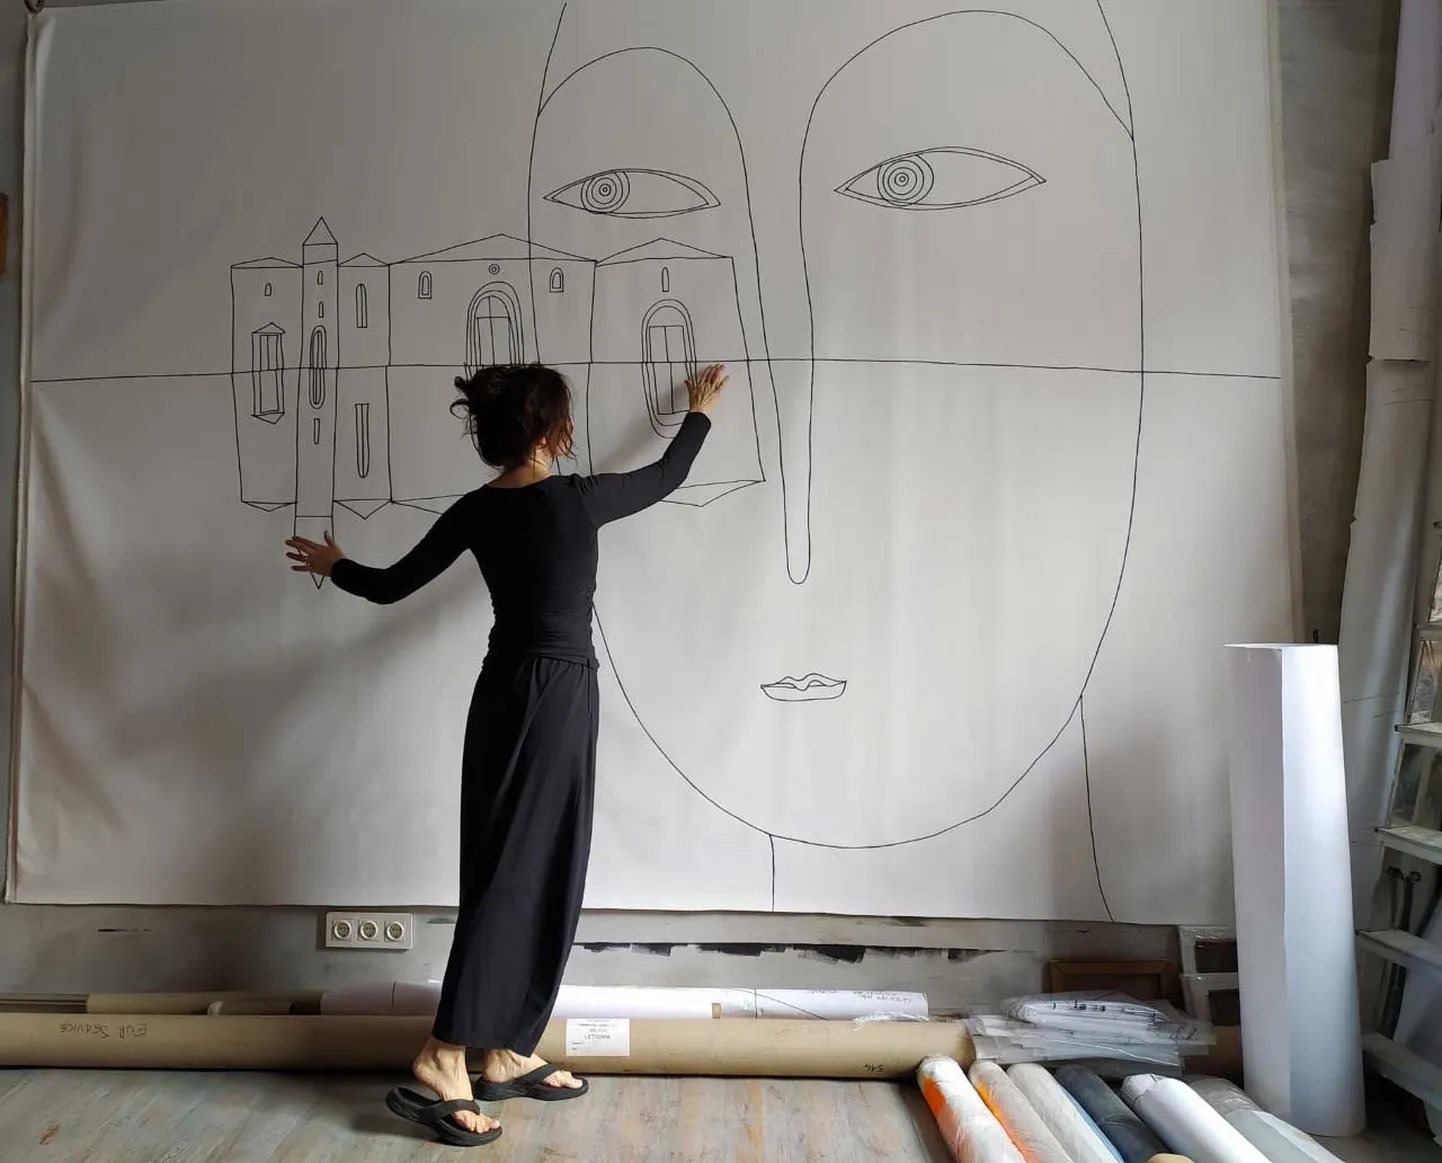 Gleznotāja Ieva Maurīte 2021. gadā iekārtojot izstādi